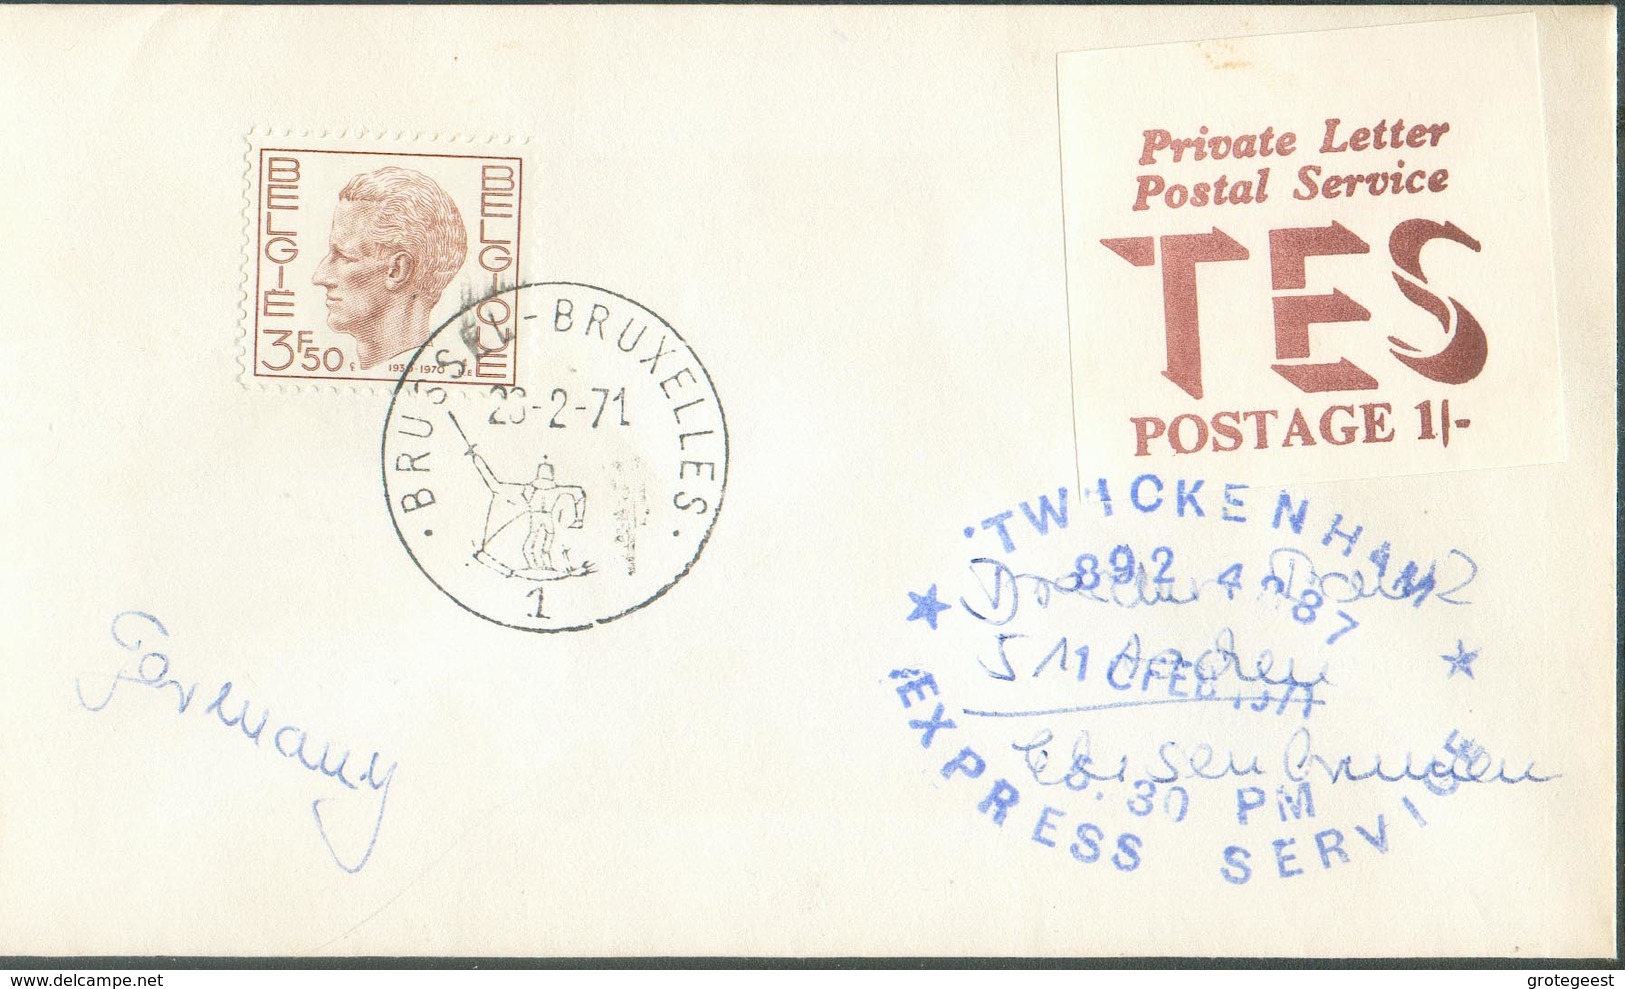 BELGIQUE - Enveloppe De Bruxelles Pour L 'Allemagne En 1971 Par Twickenham ( Service Poste Privée )  - 14995 - Covers & Documents